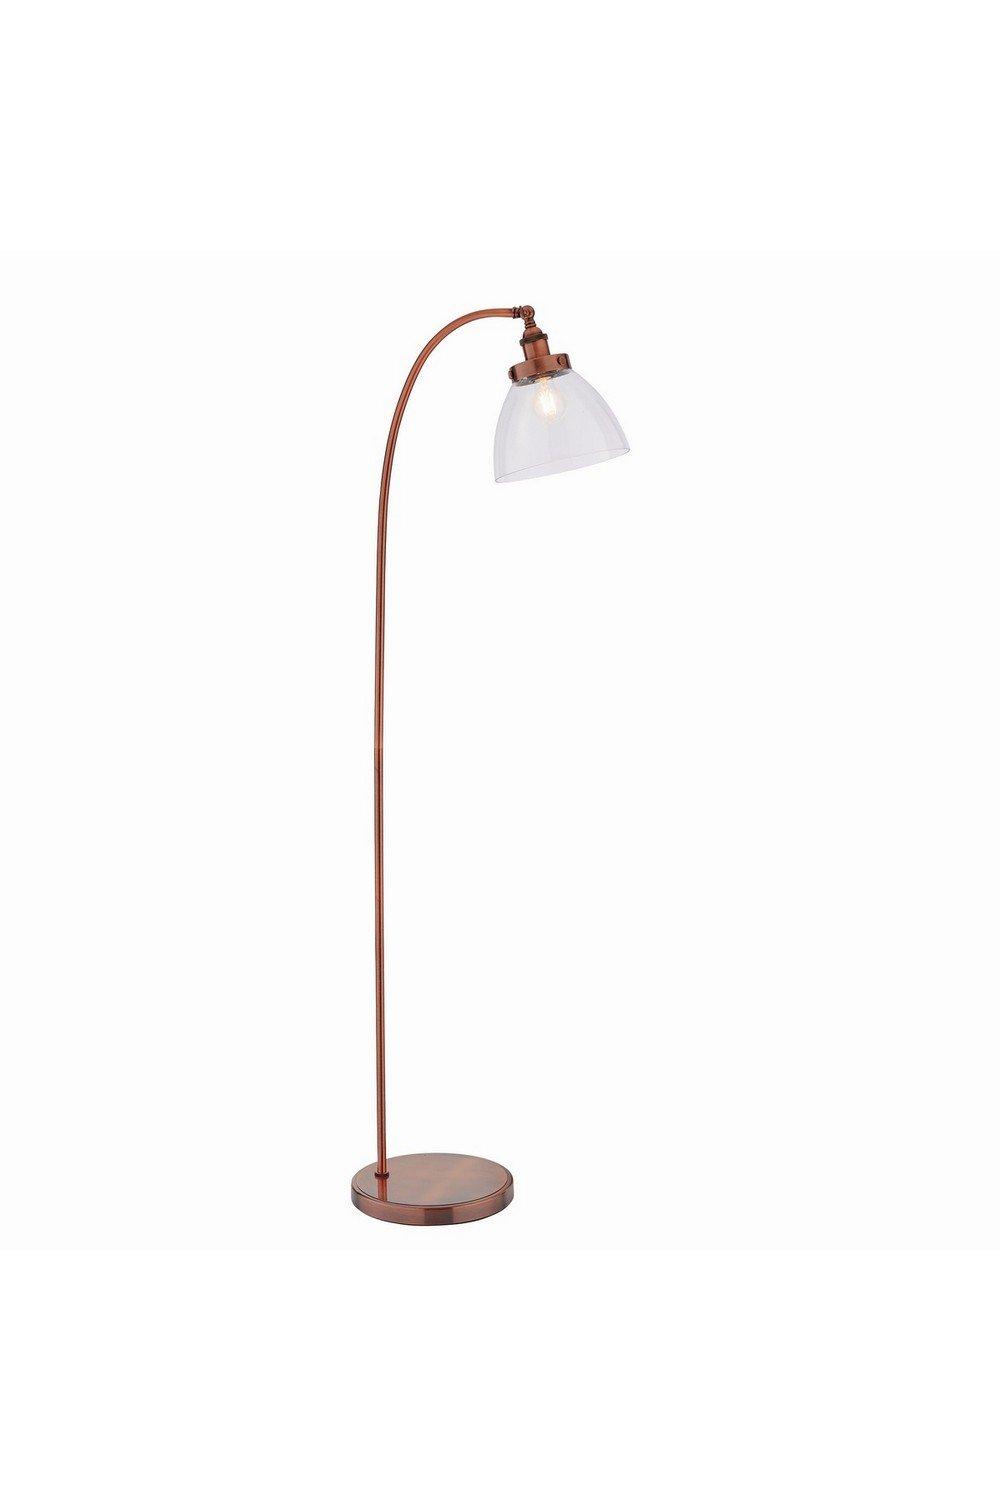 Hansen 1 Light Floor Lamp Aged Copper Glass E27